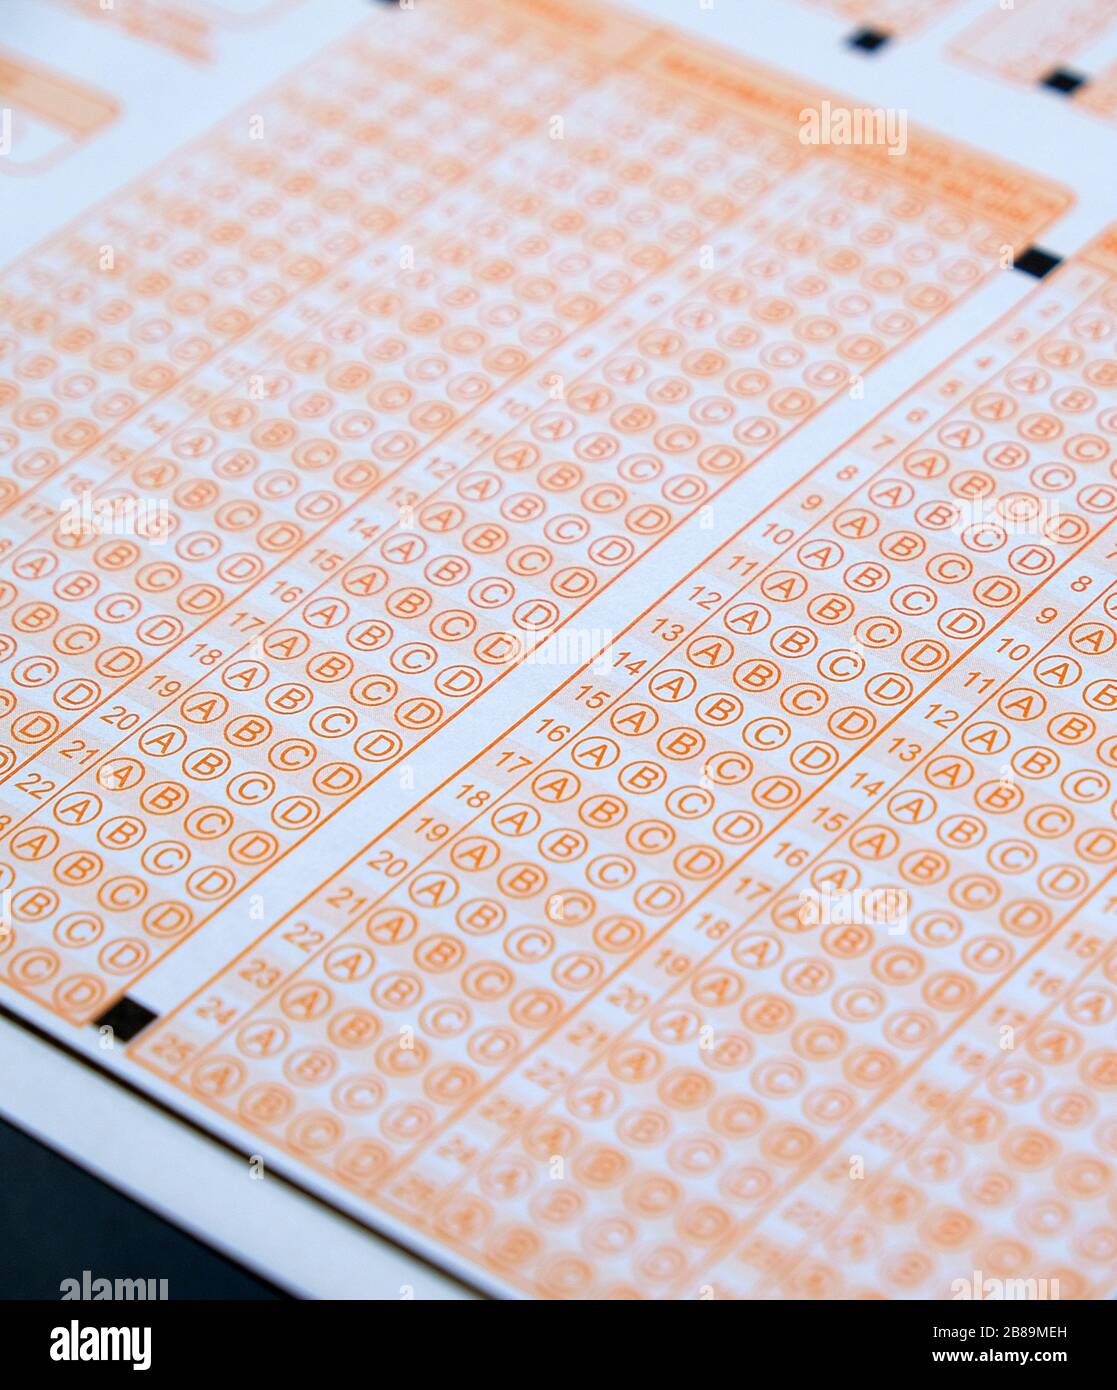 papel óptico de examen sin marcar, papel examen óptico en blanco Fotografía stock -